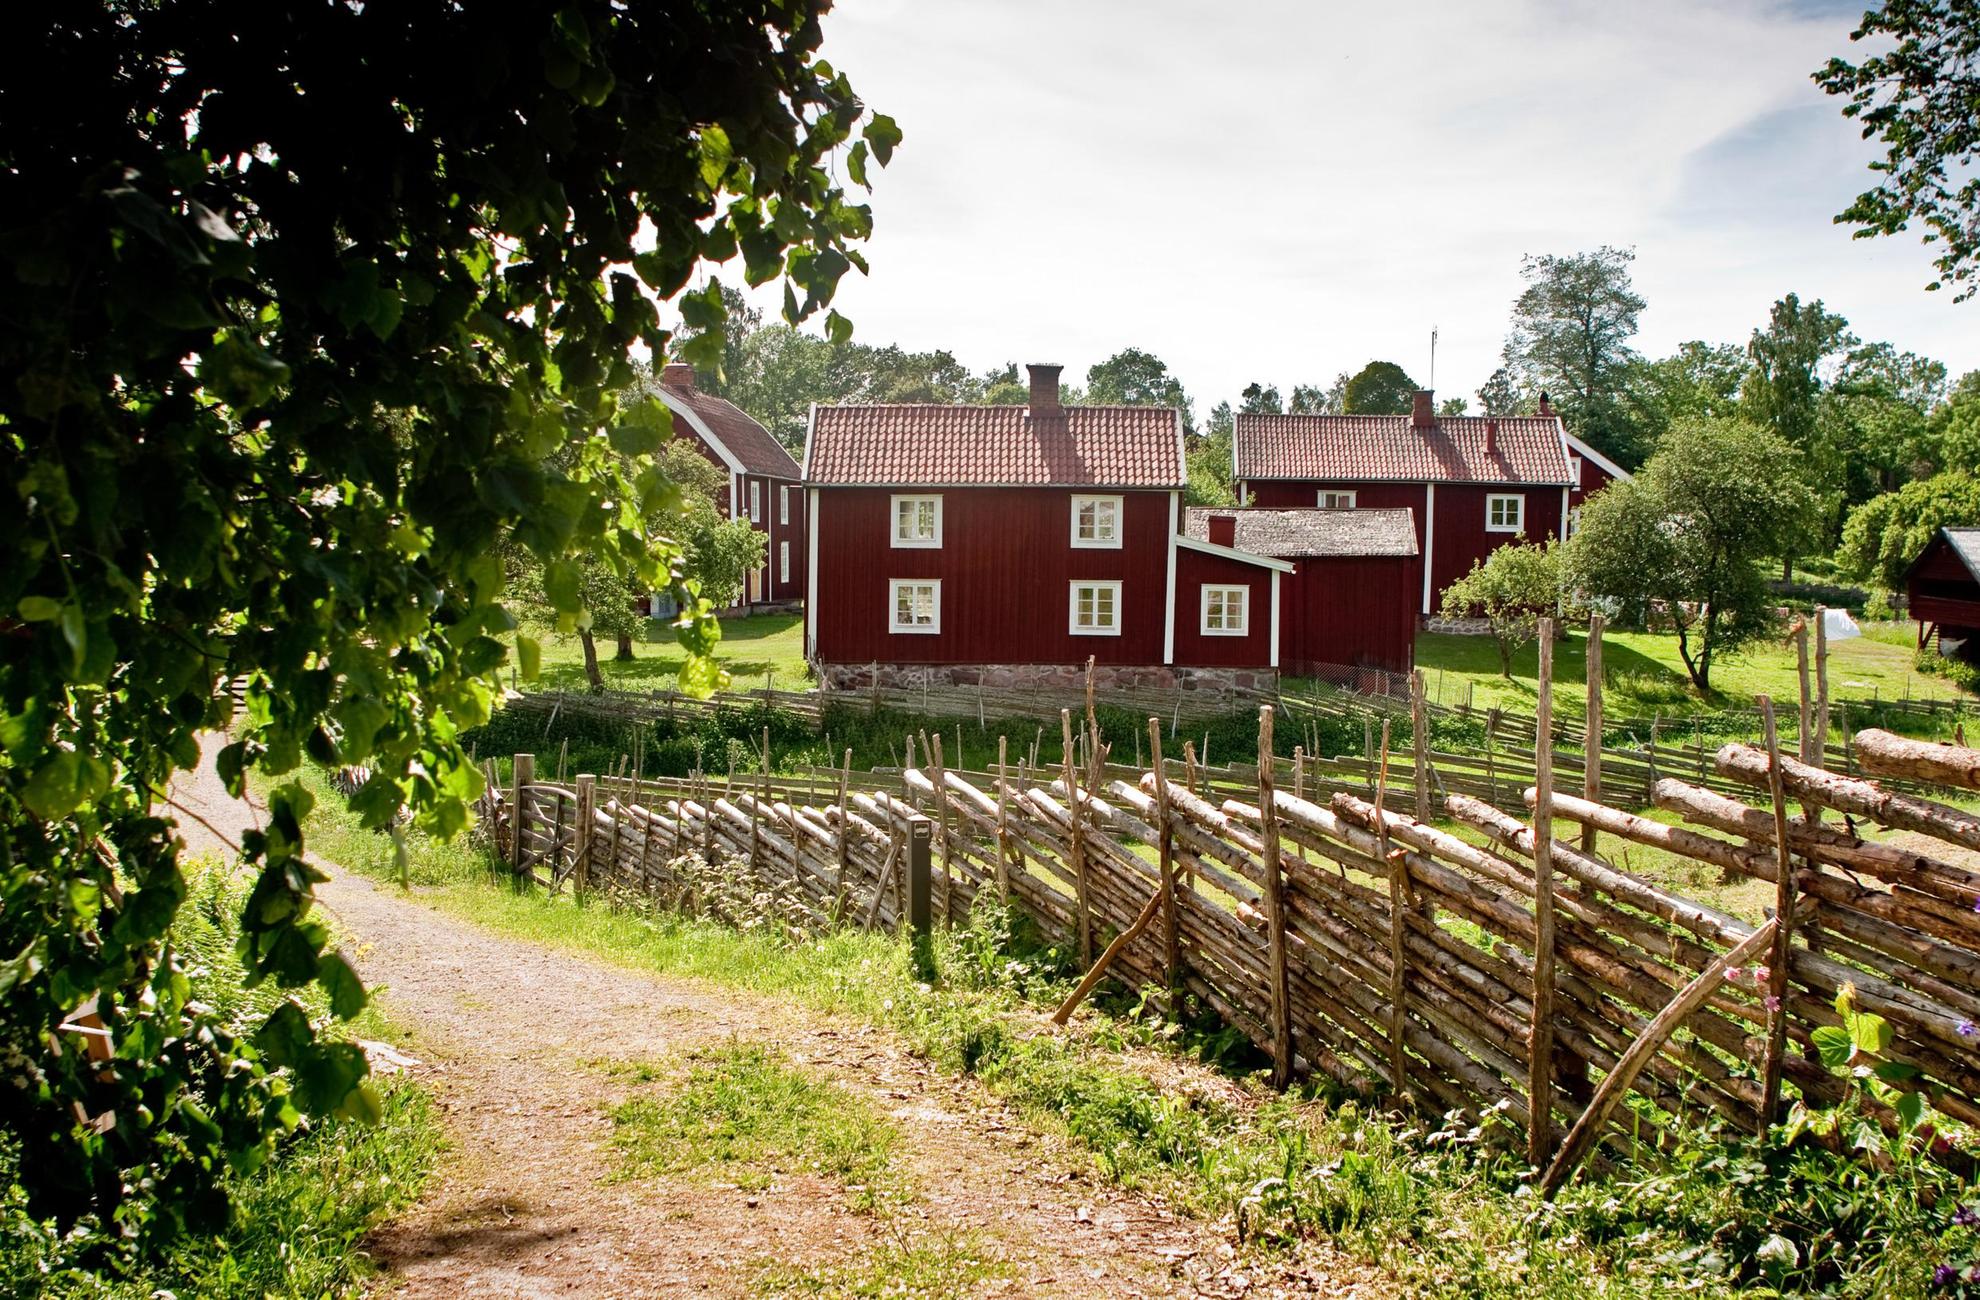 Eine Reihe typischer Landhäuser, rot gestrichen mit weißen Verzierungen, und ein altmodischer Zaun aus dünnen Kiefern.